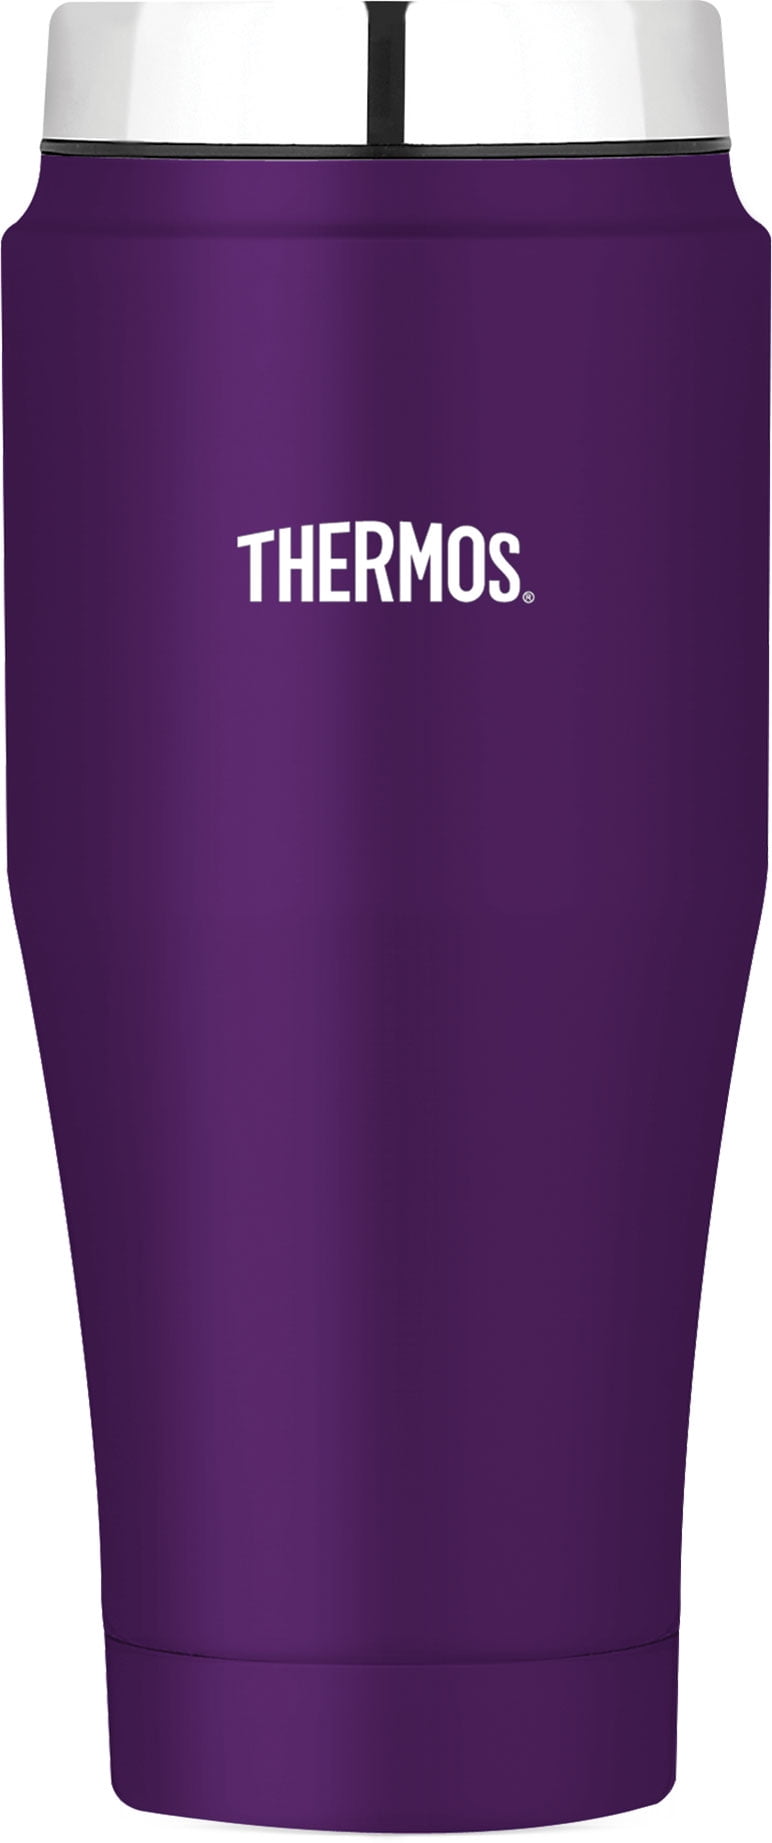 Thermos Tumbler